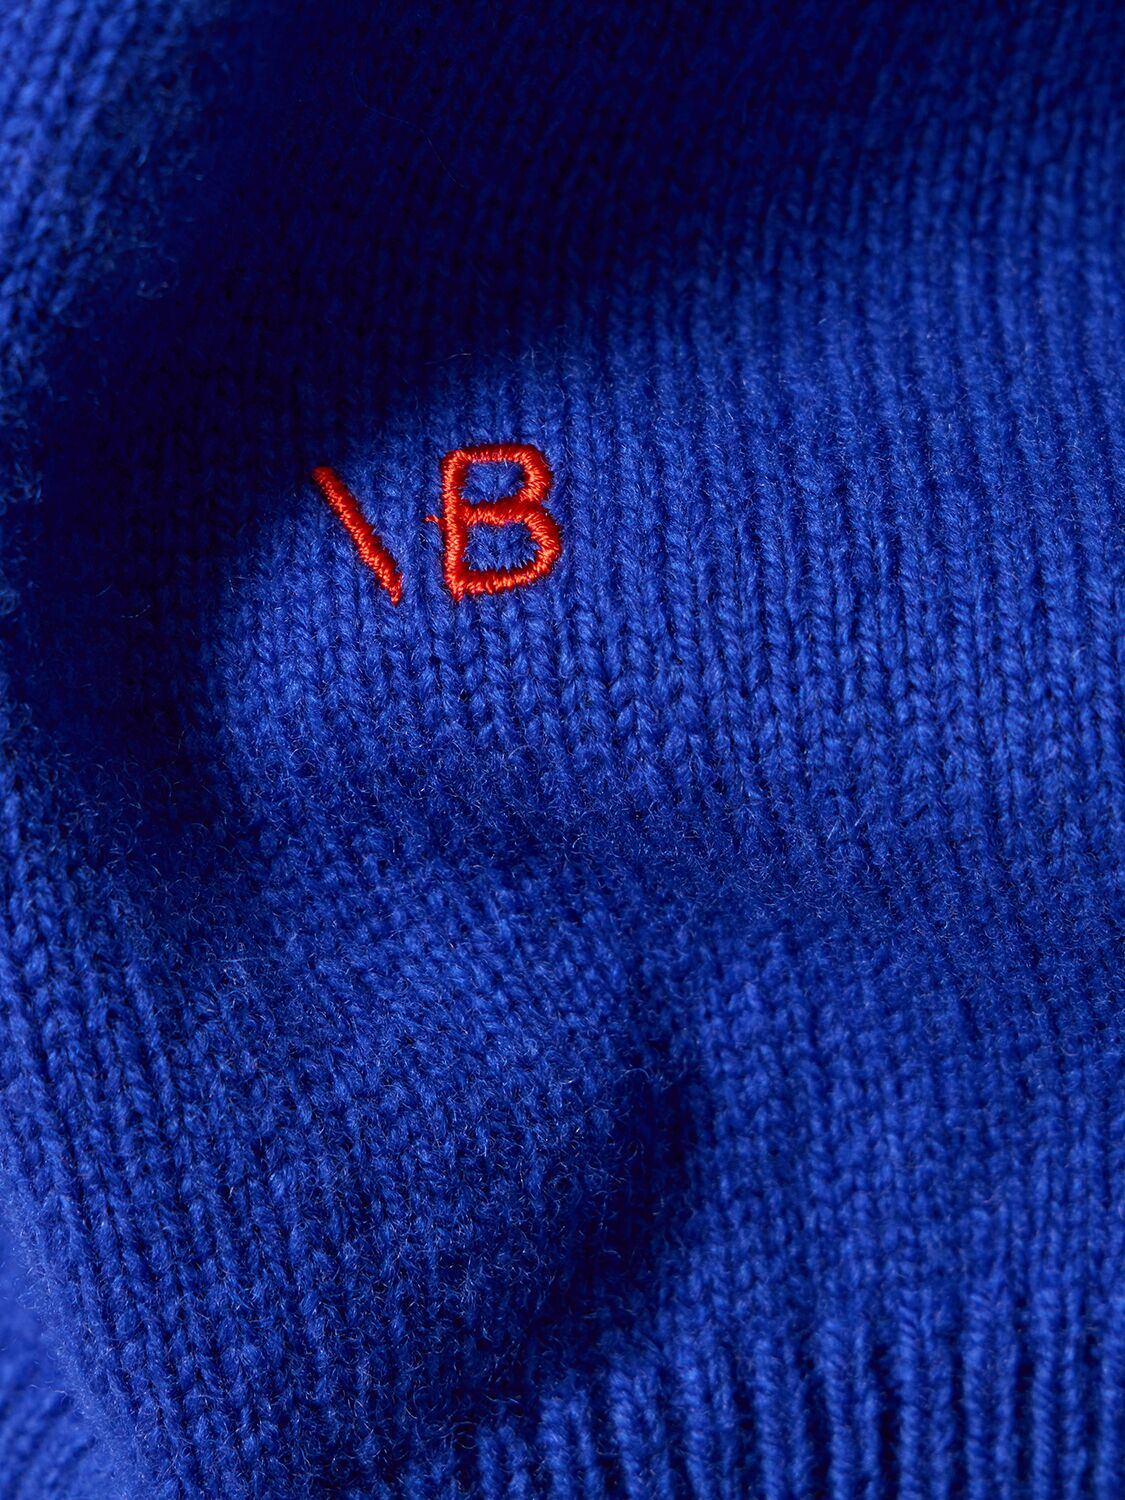 Shop Victoria Beckham Wool Turtleneck Sweater In Blue